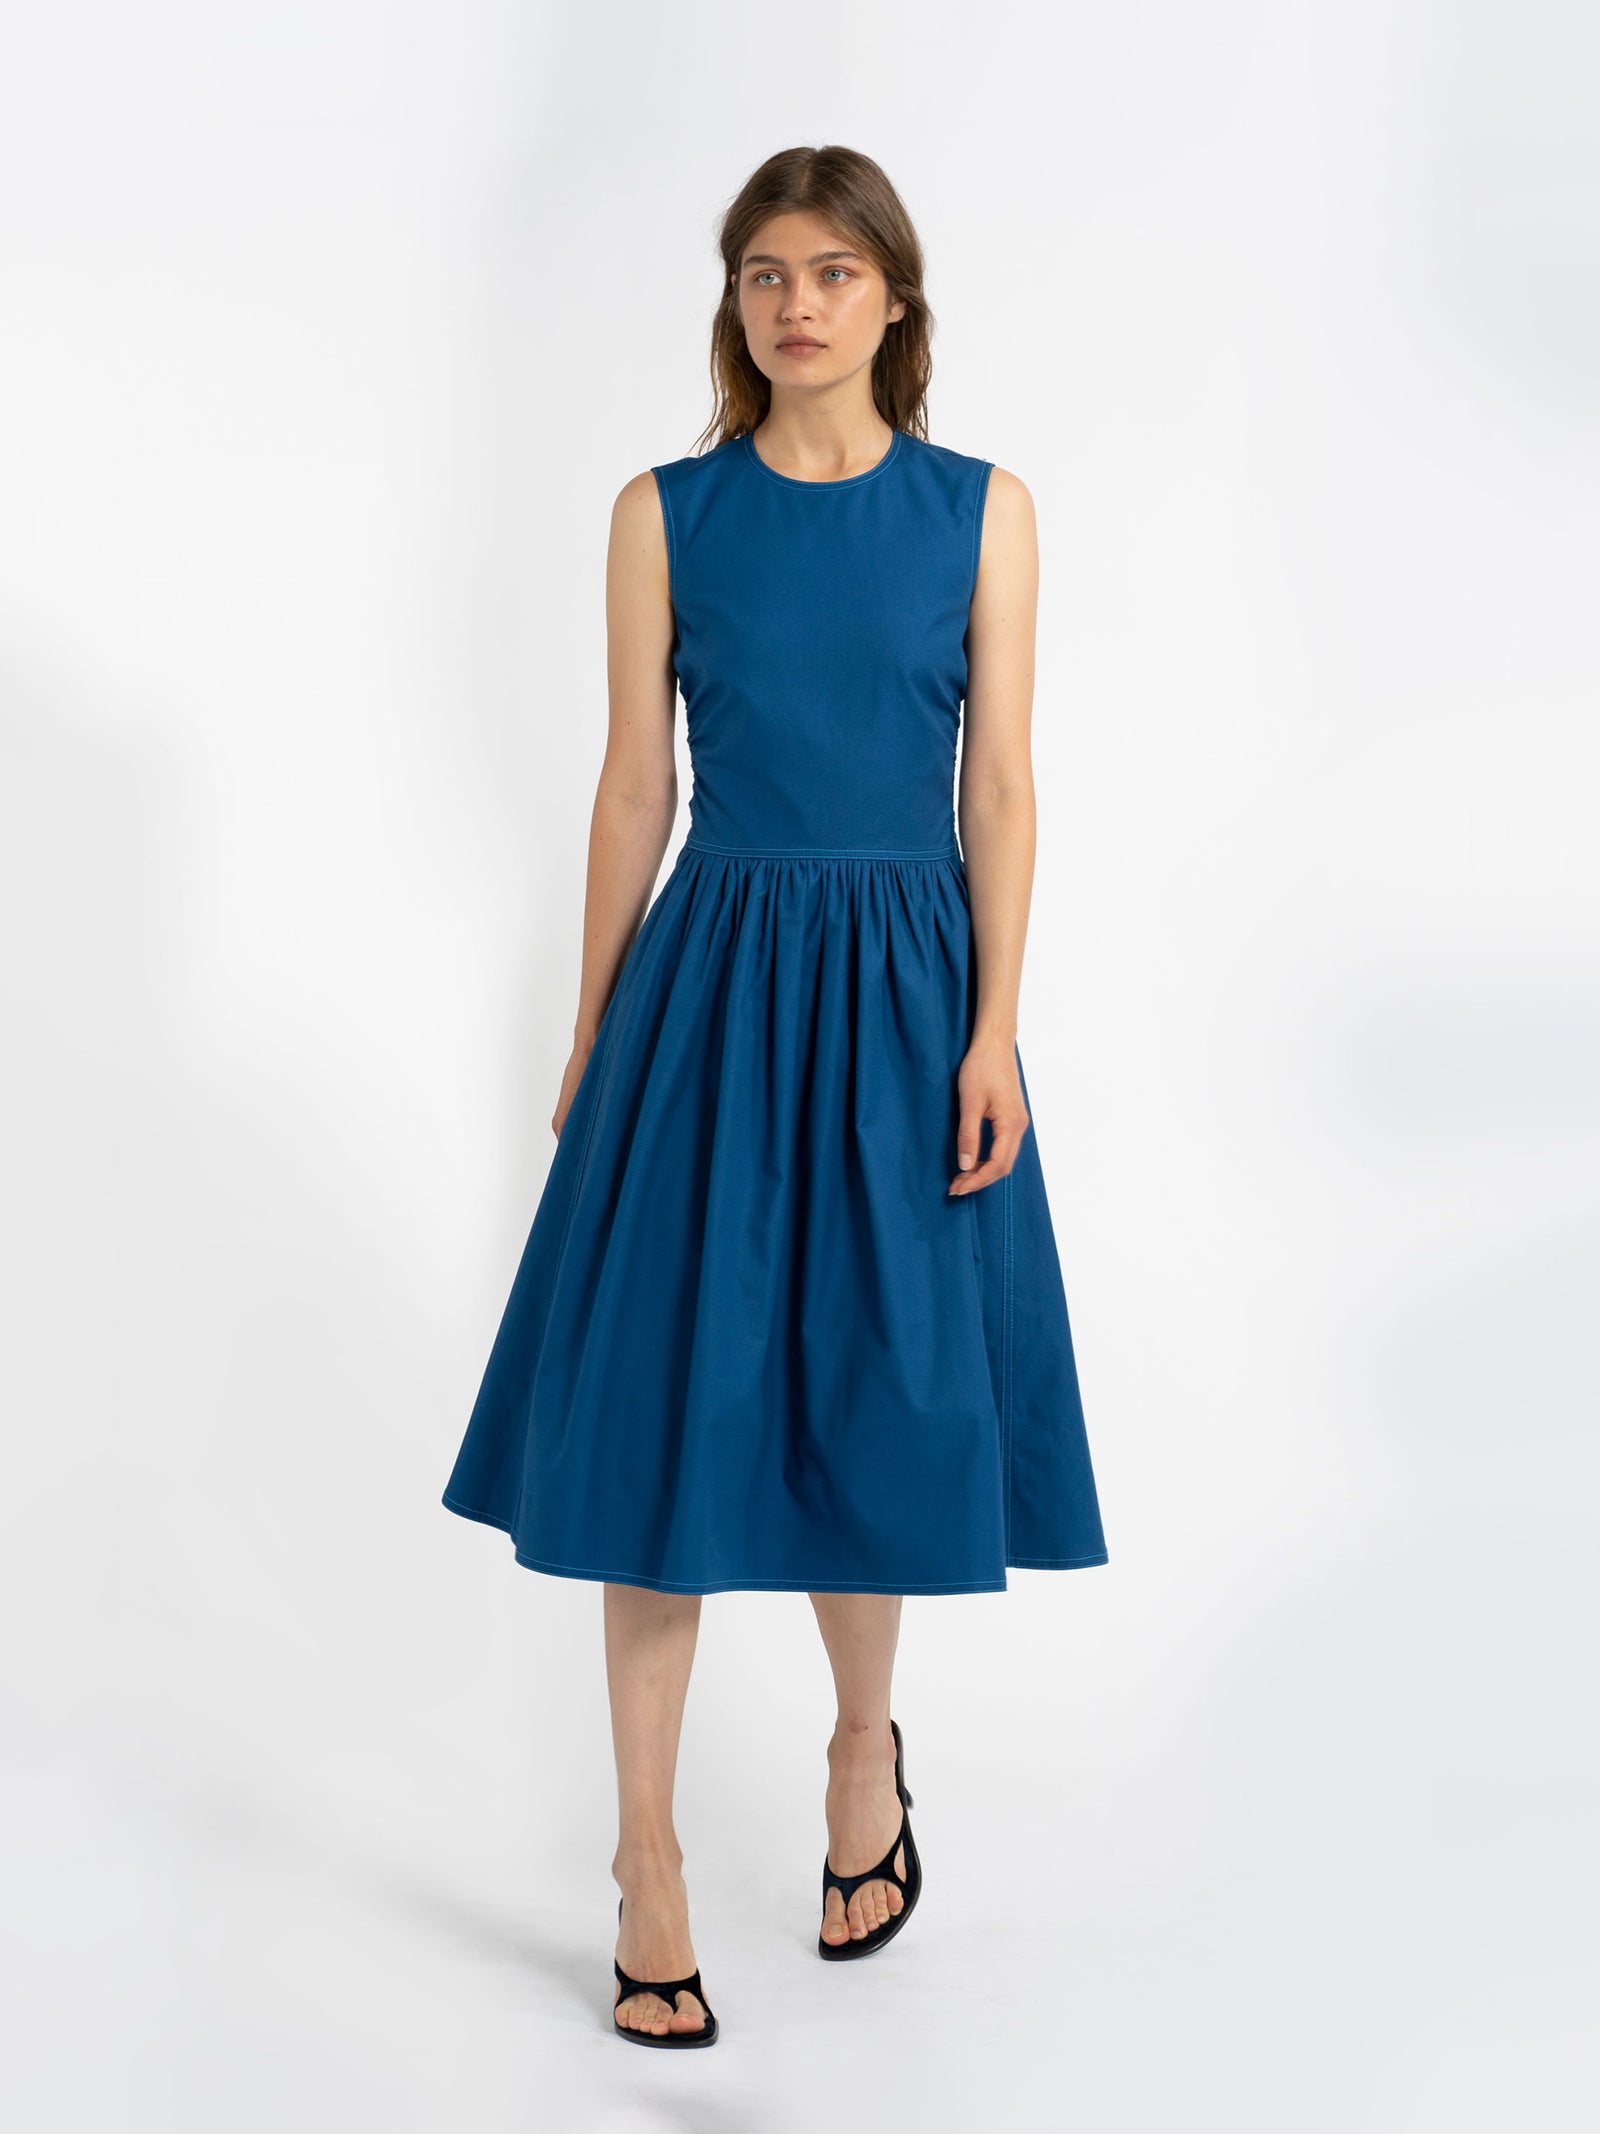 Sies Marjan - Violetta Cotton Canvas Dress - Lapis Blue - Women's Dresses